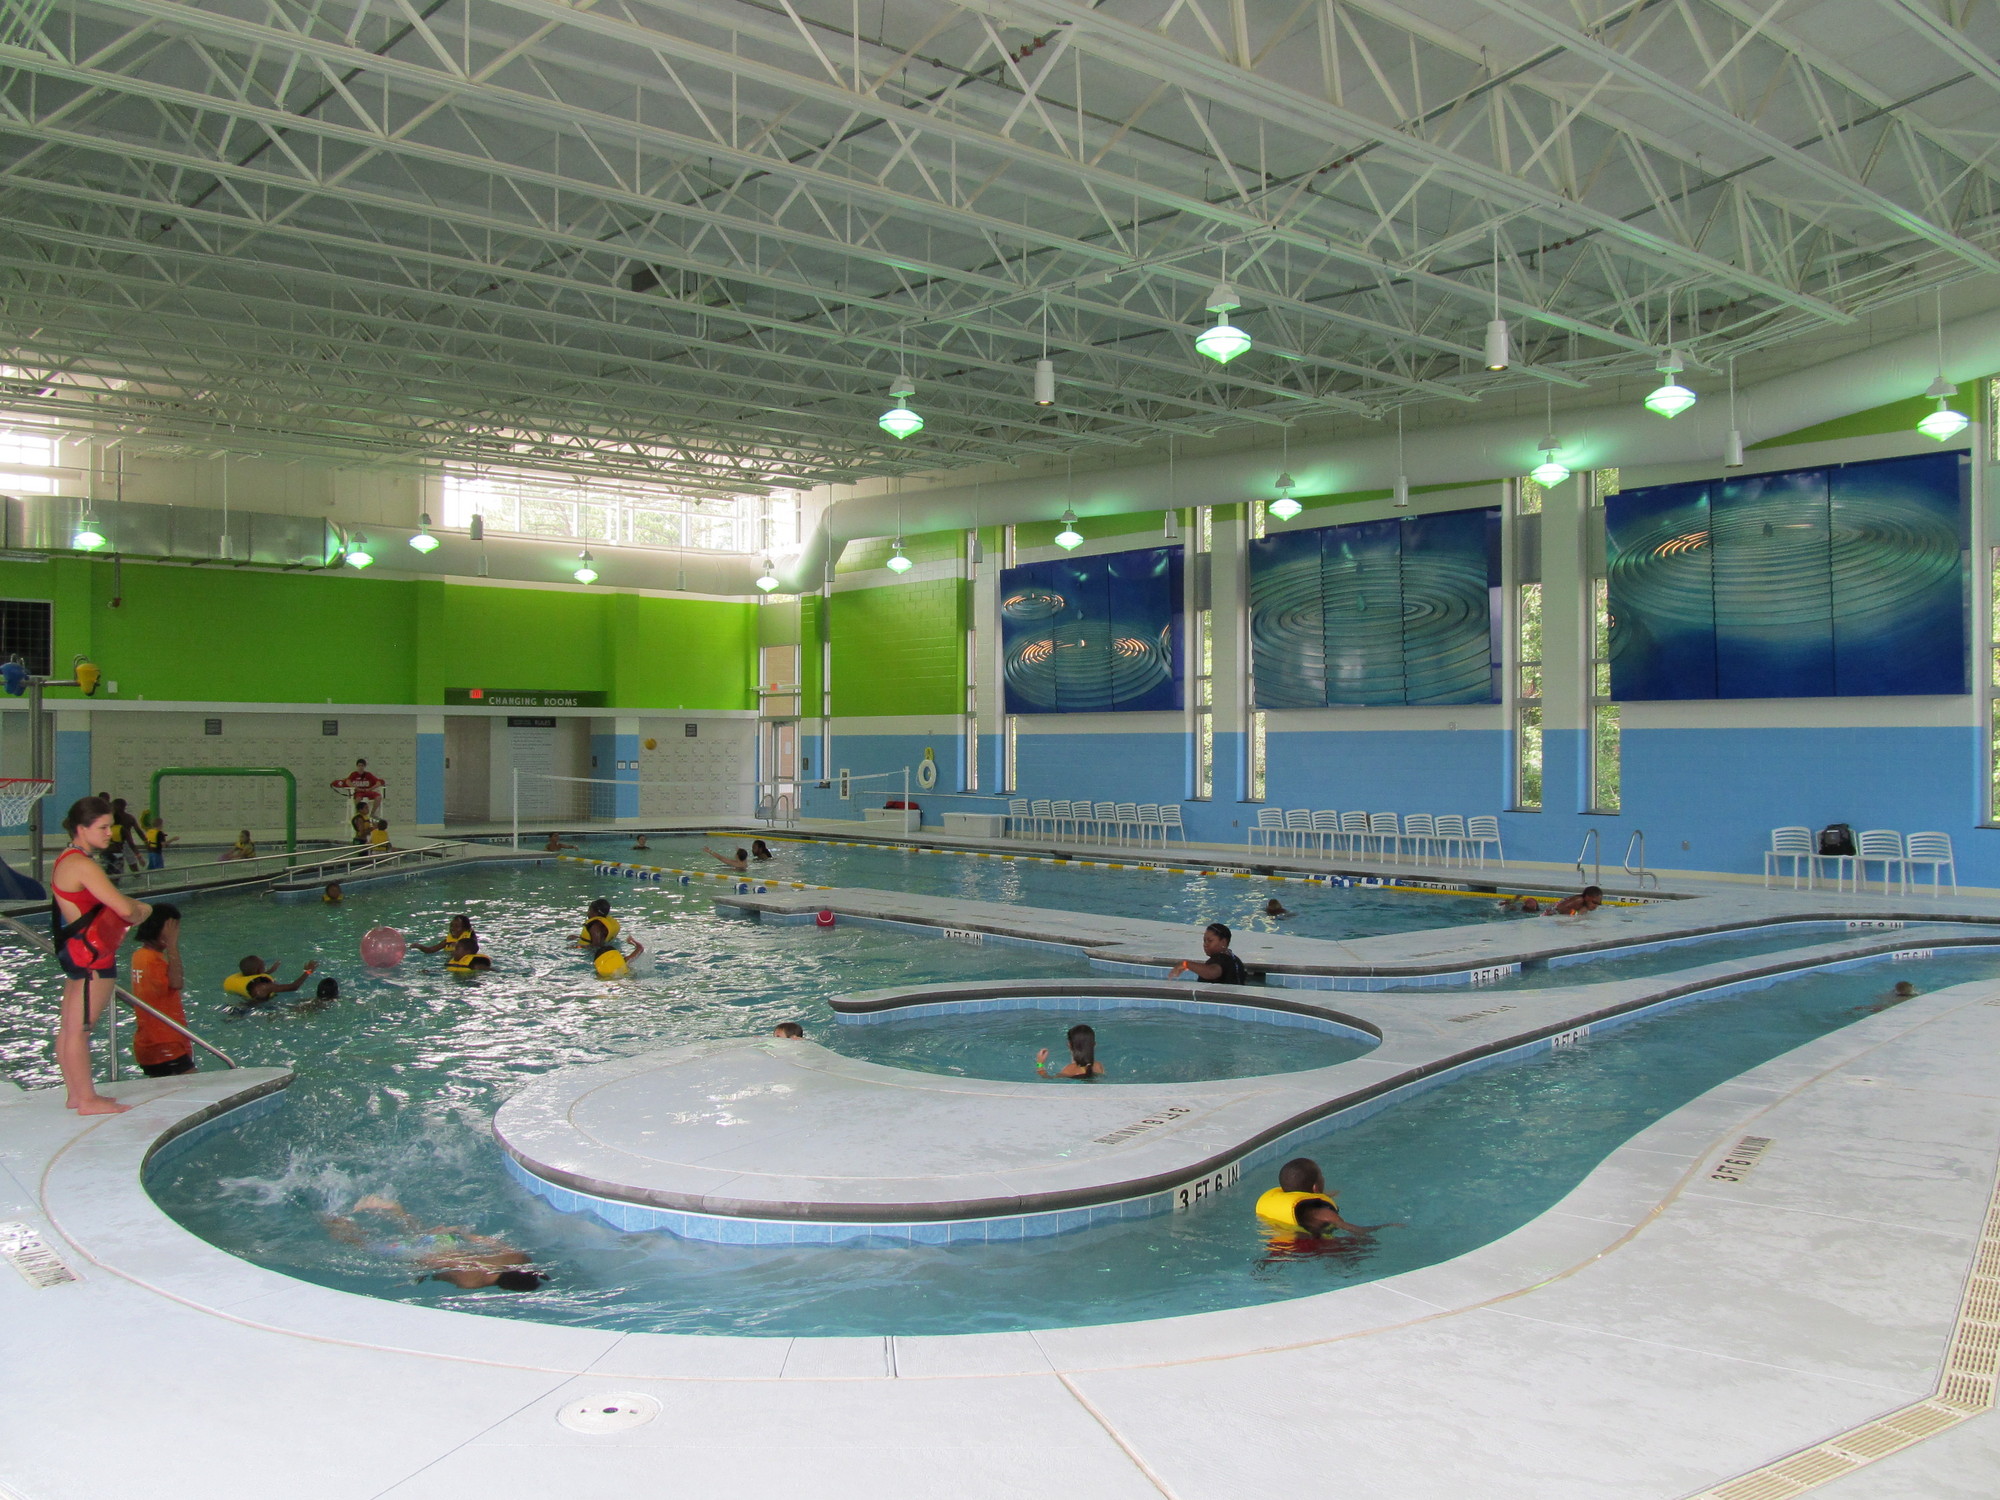 Buffaloe Road aquatic Center